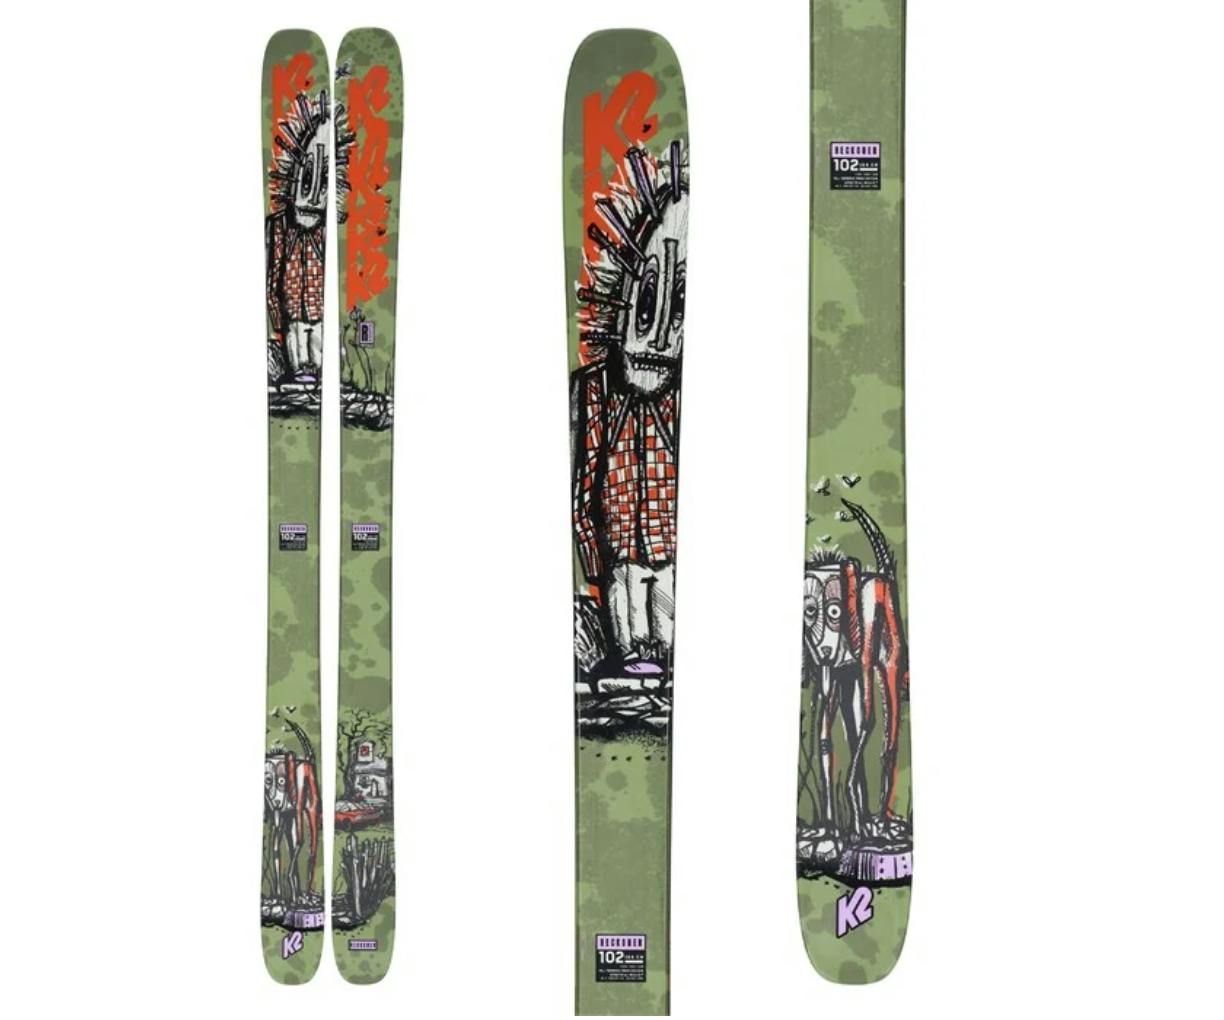 The Reckoner 102 Skis. 